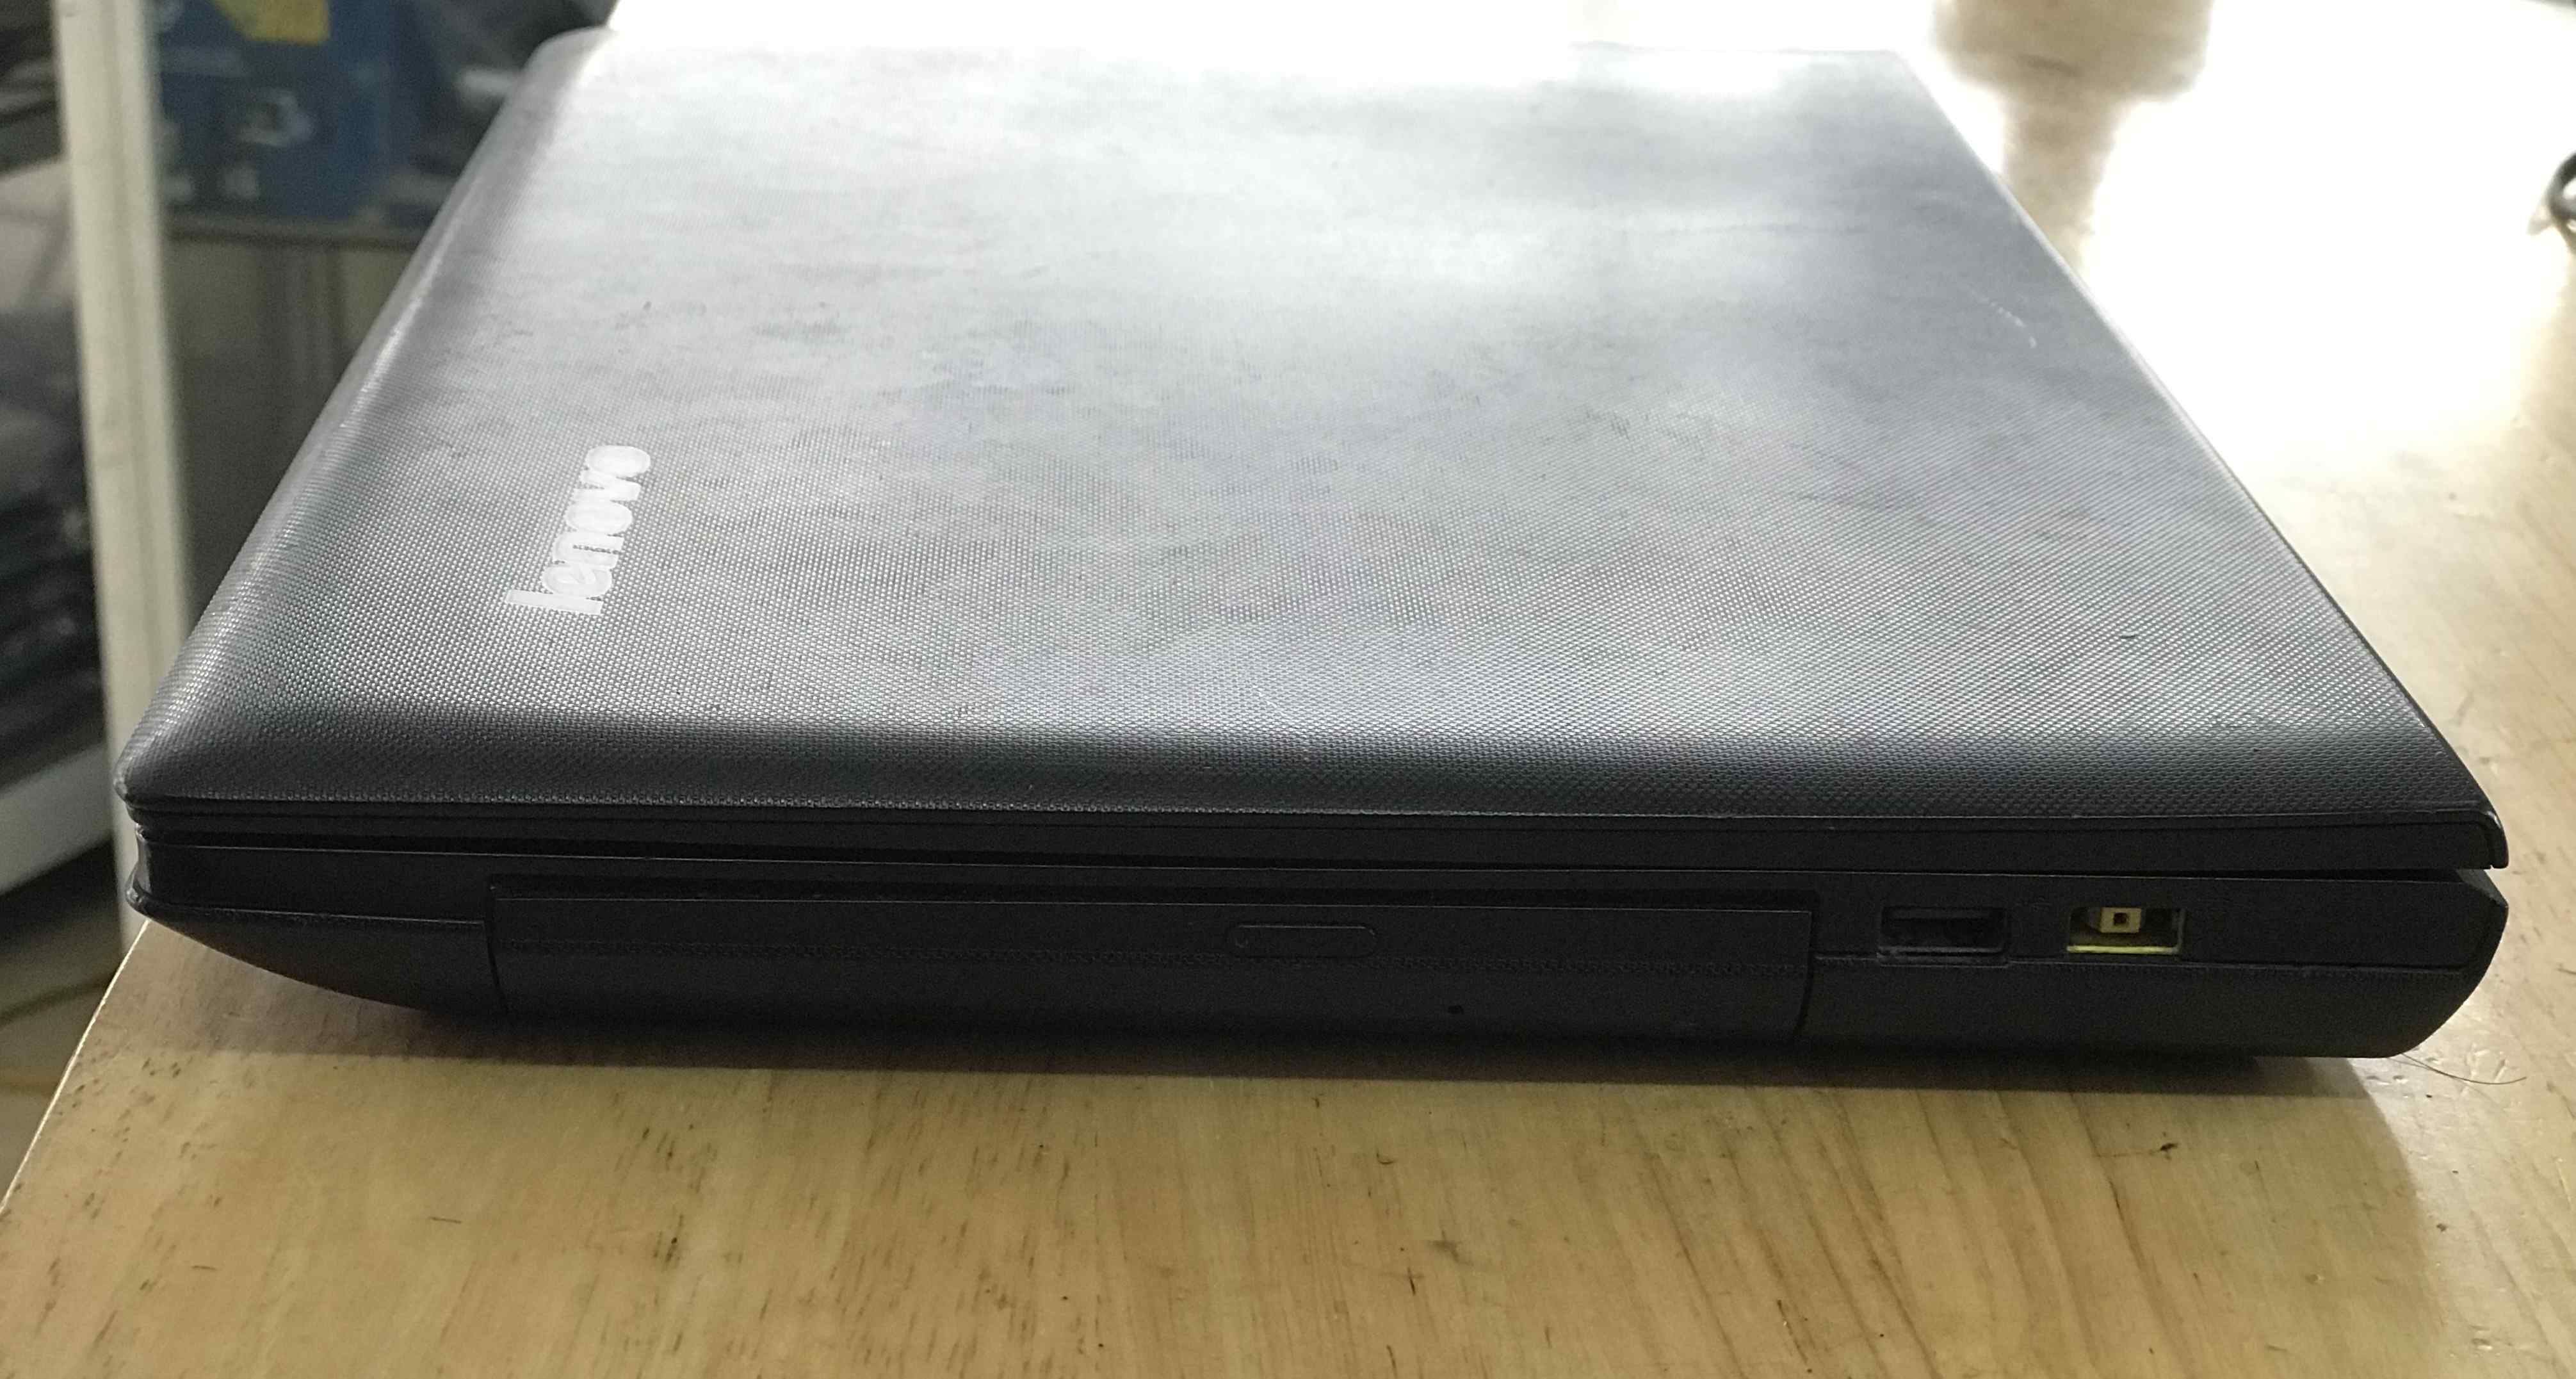 bán laptop cũ lenovo g400 giá rẻ tại hải dương